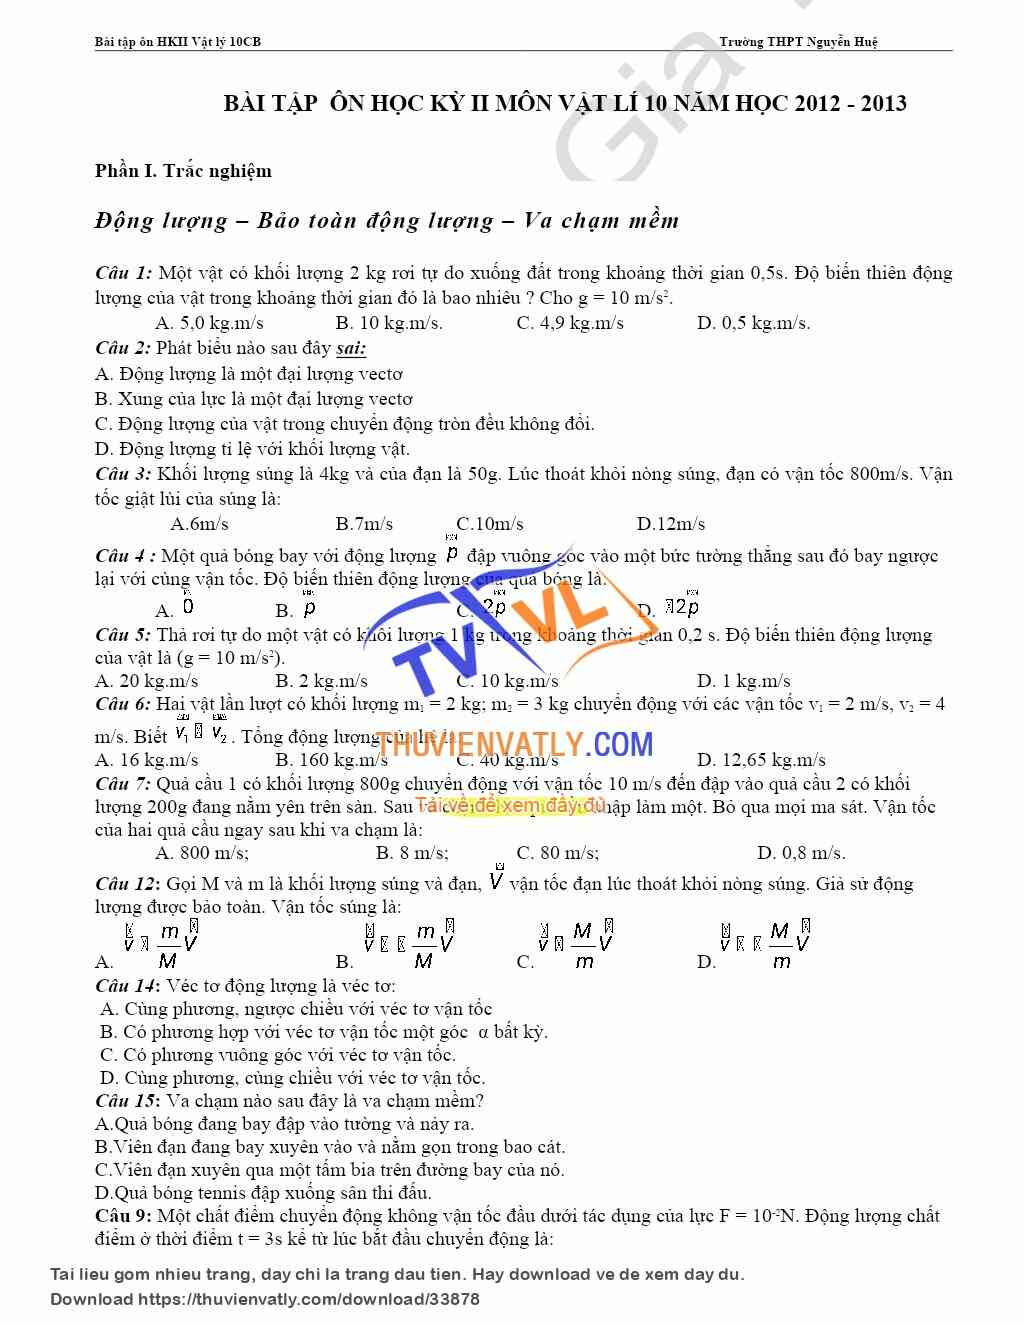 Một số Bài tập ôn HKII môn Vật lý 10CB theo chủ đề